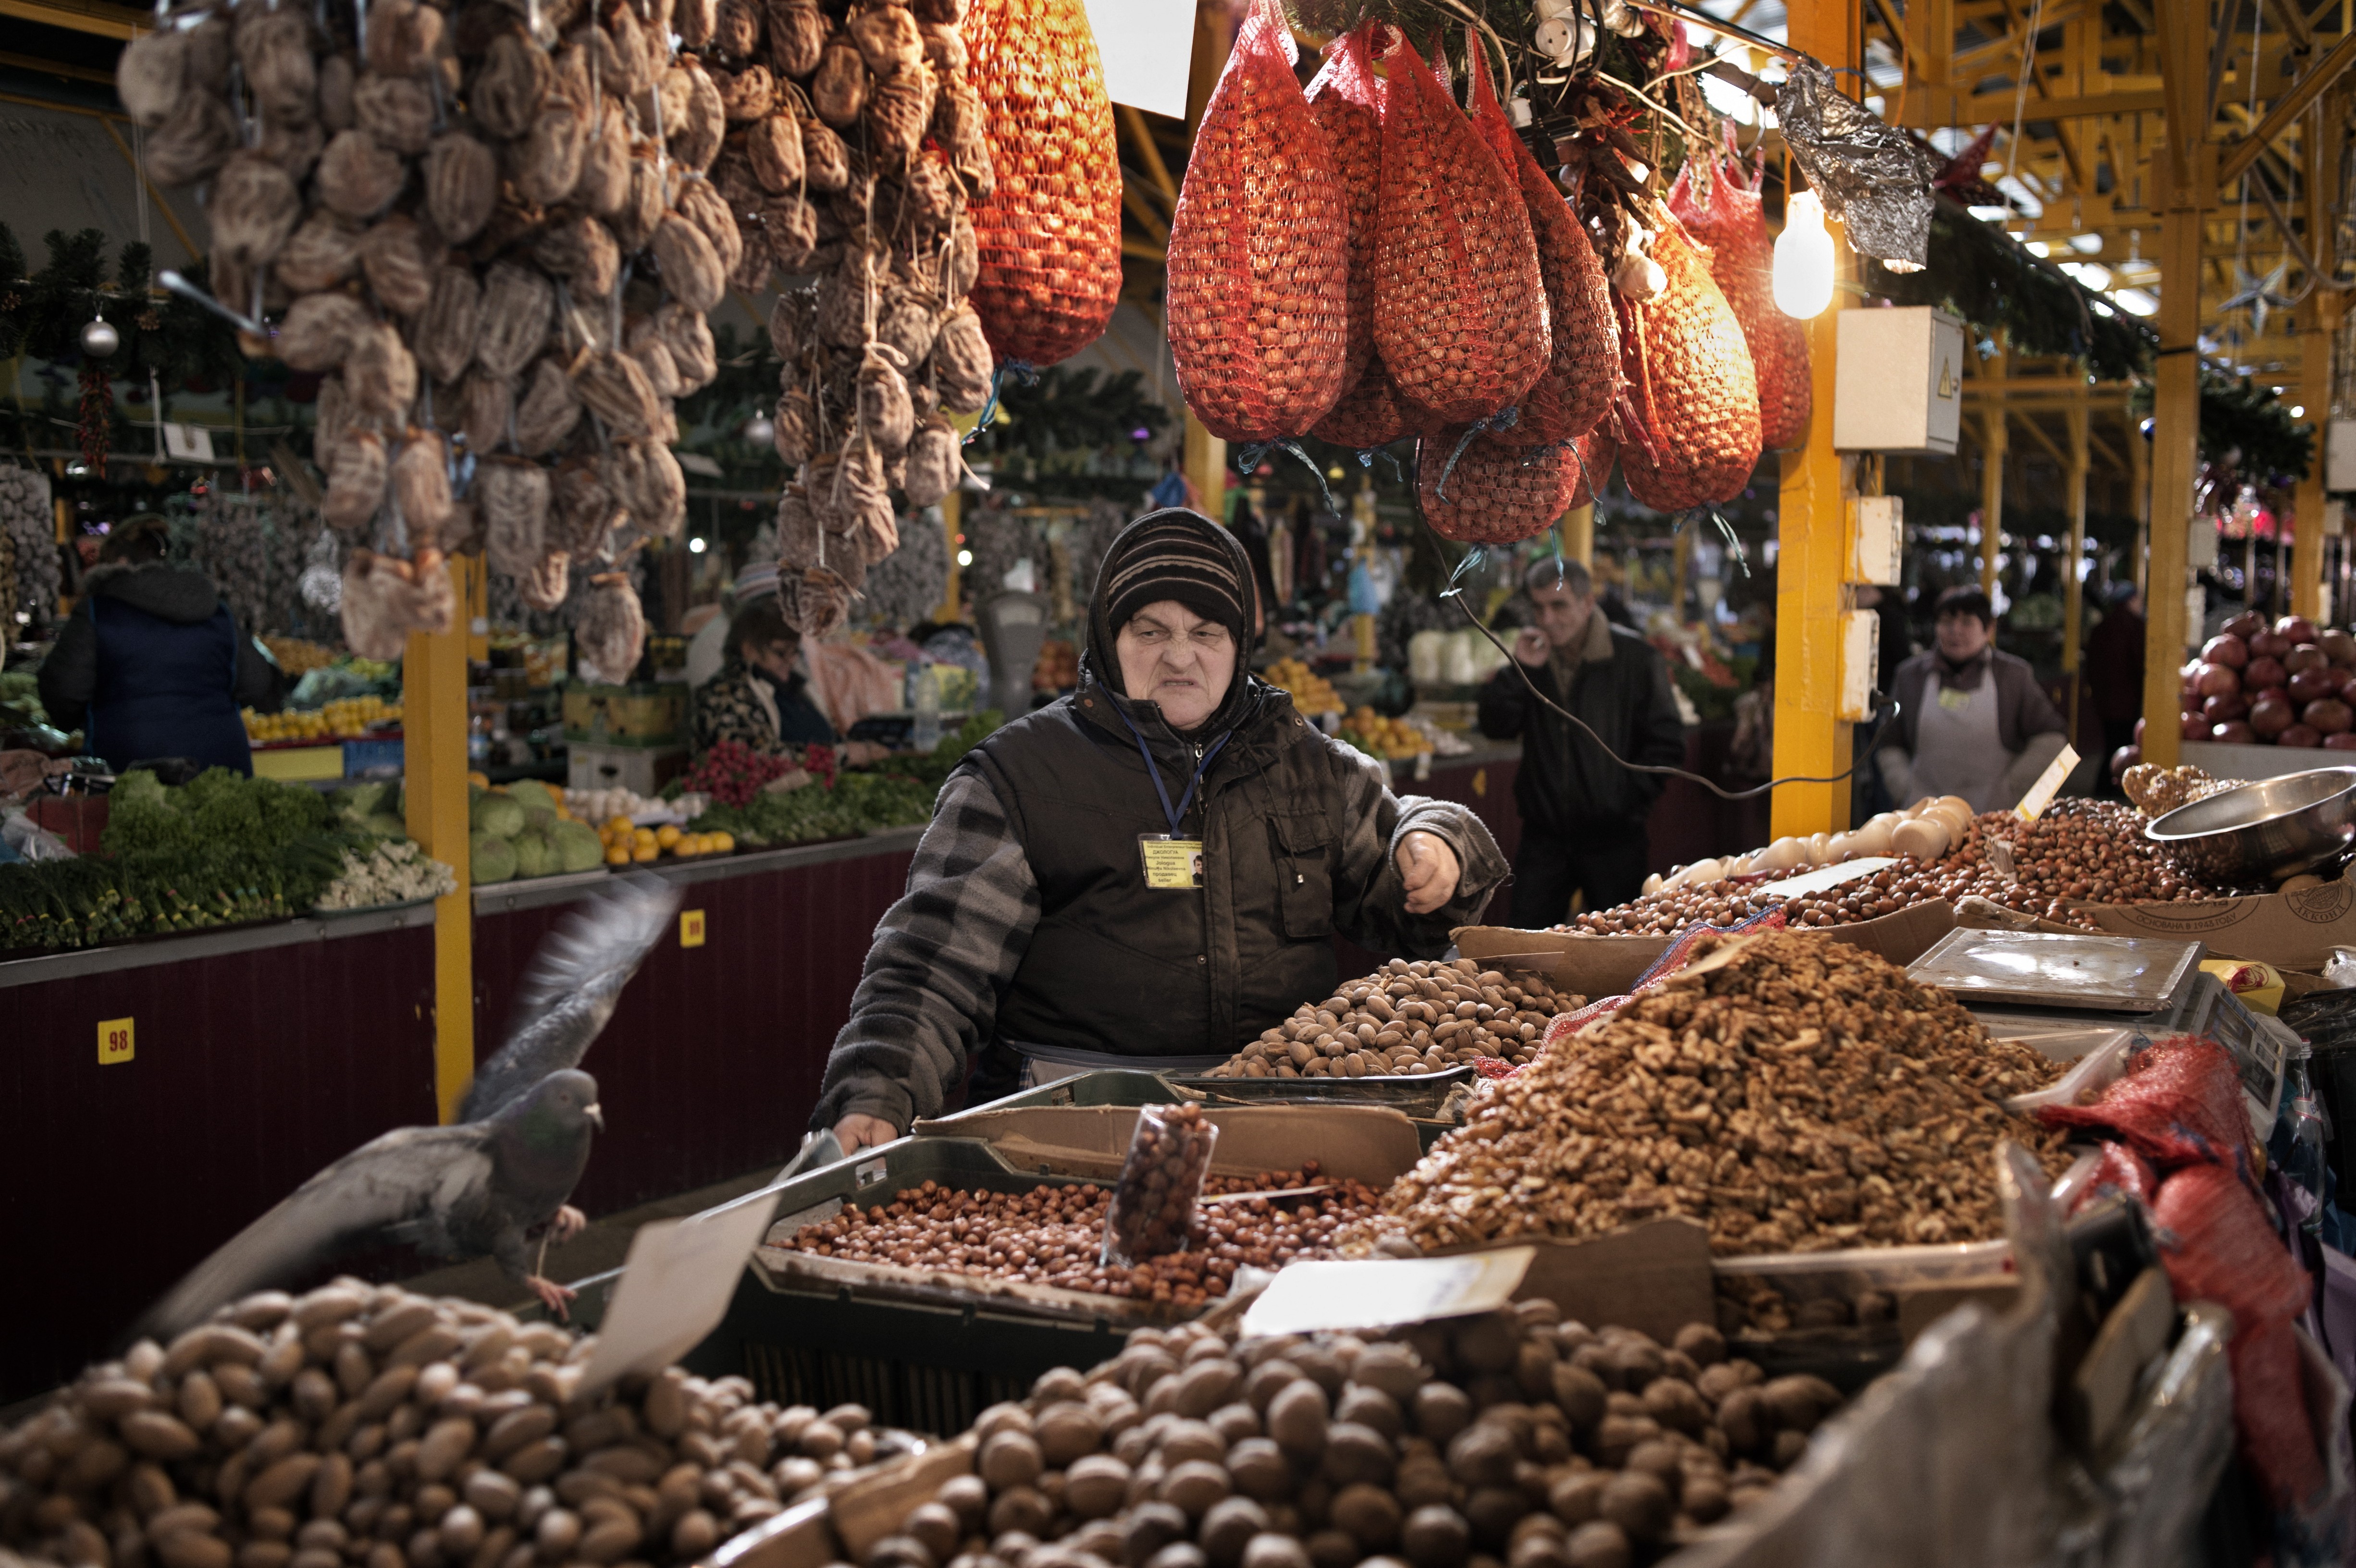 Adler, Russia, Jan. 15, 2014: The market at Adler.